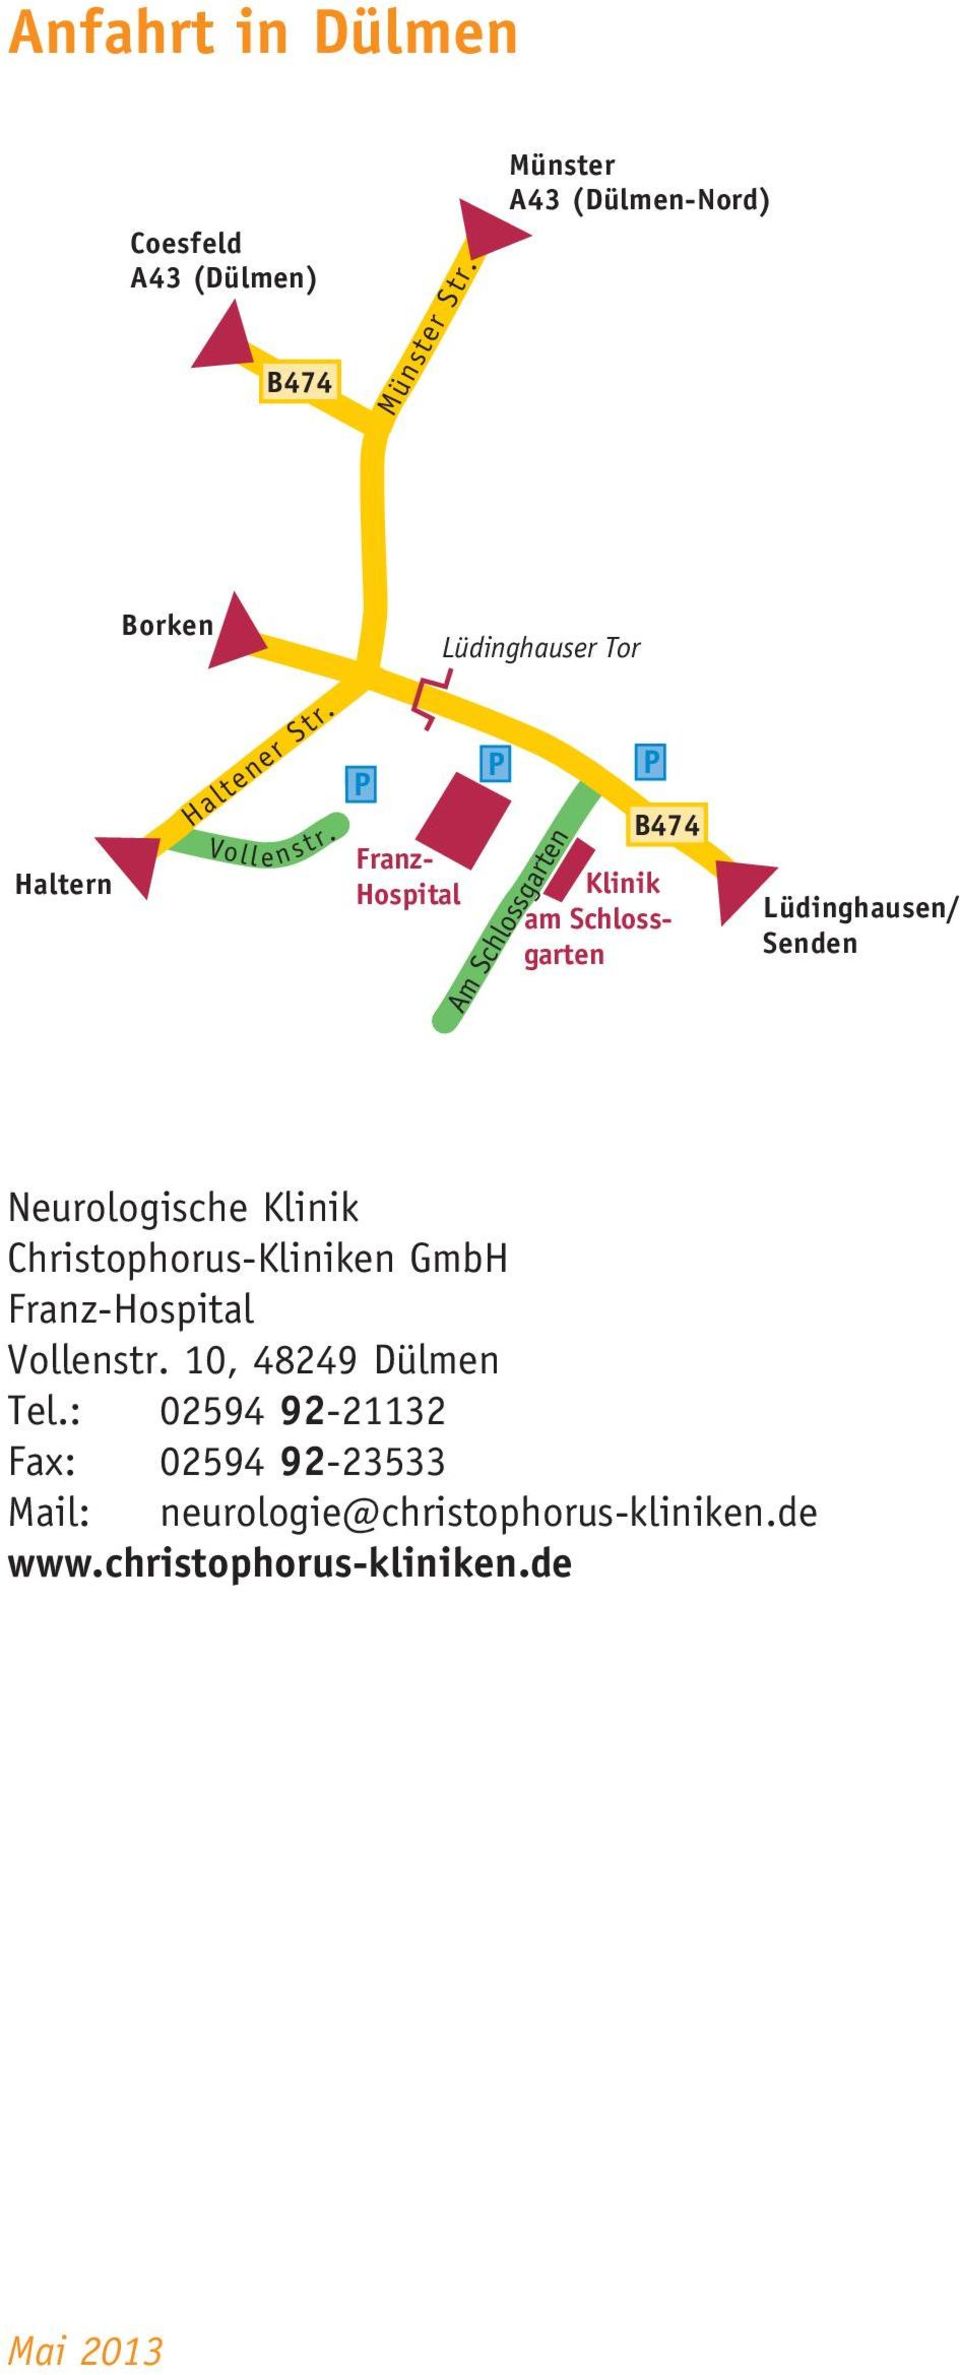 P Franz- Hospital P B474 Klinik am Schlossgarten Am Schlossgarten P Lüdinghausen/ Senden Neurologische Klinik